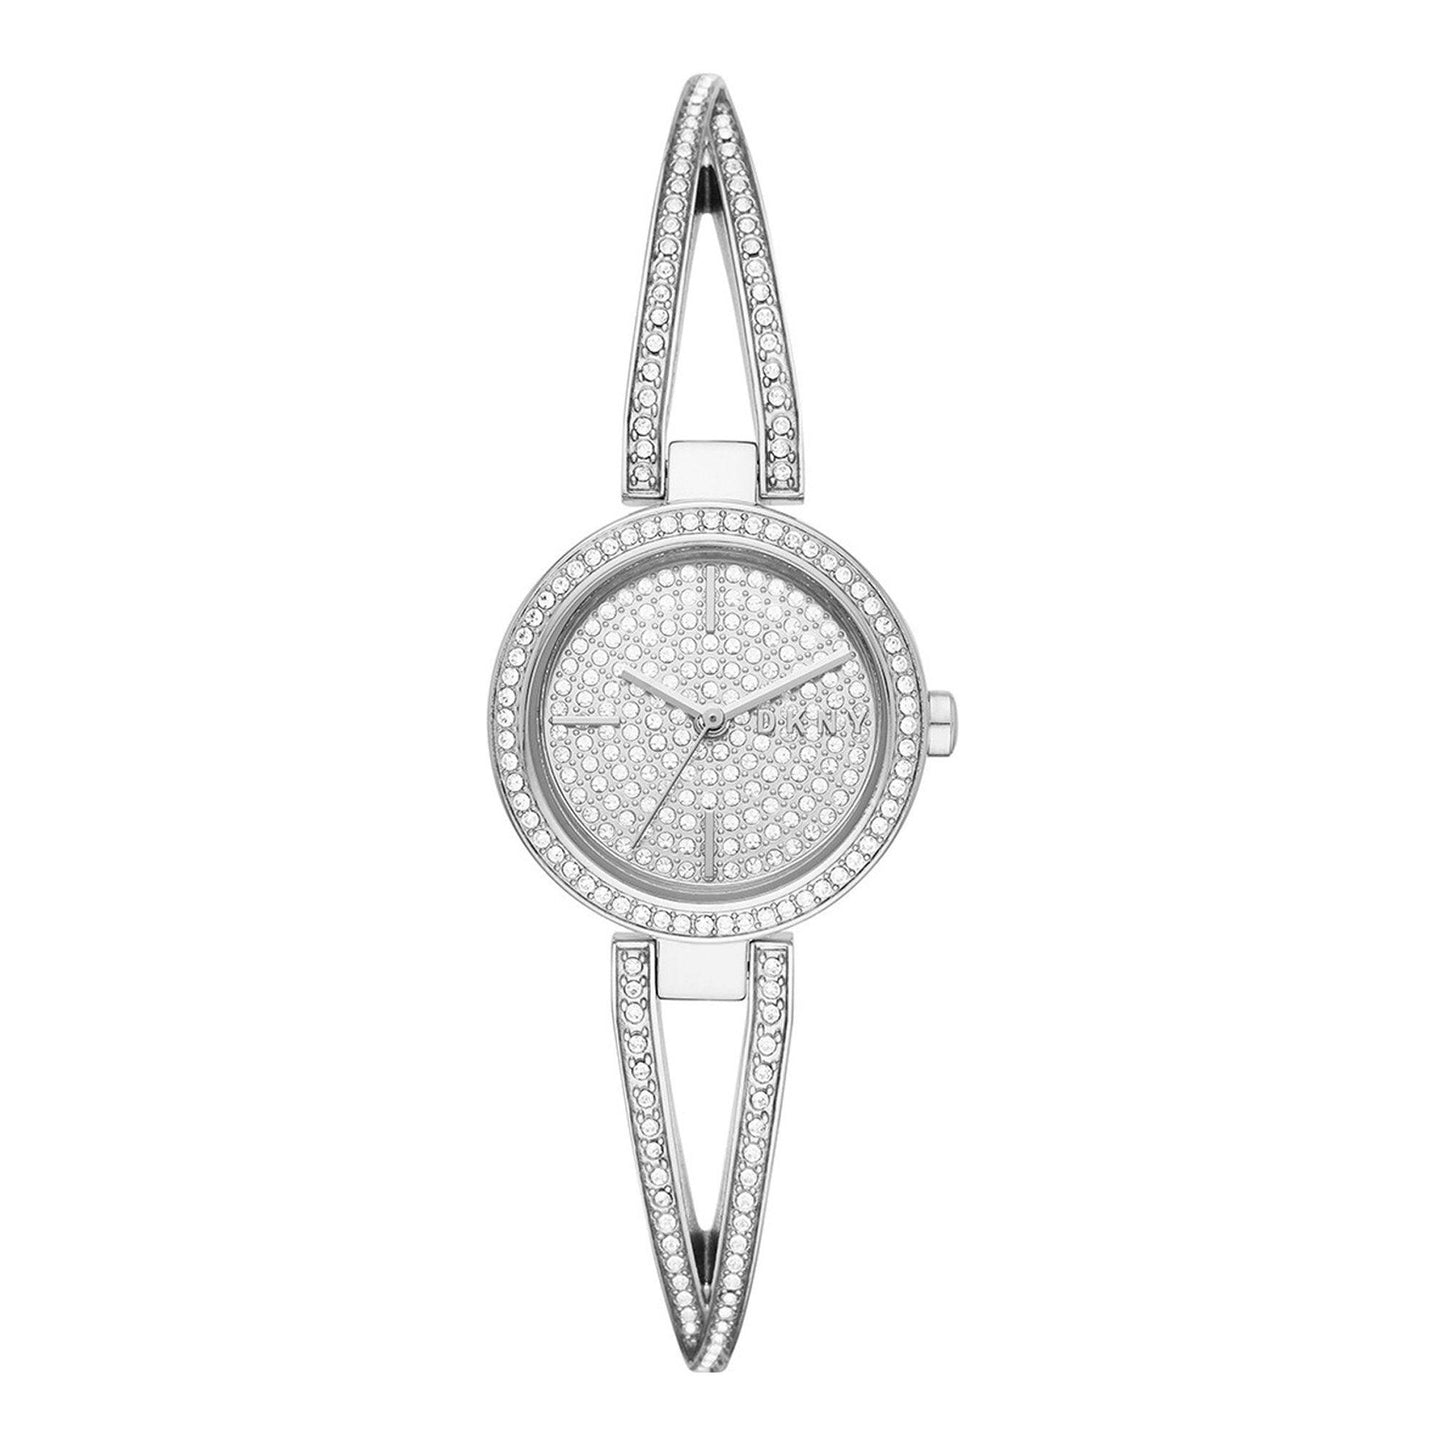 DKNY Crosswalk NY2852 orologio donna al quarzo - Kechiq Concept Boutique